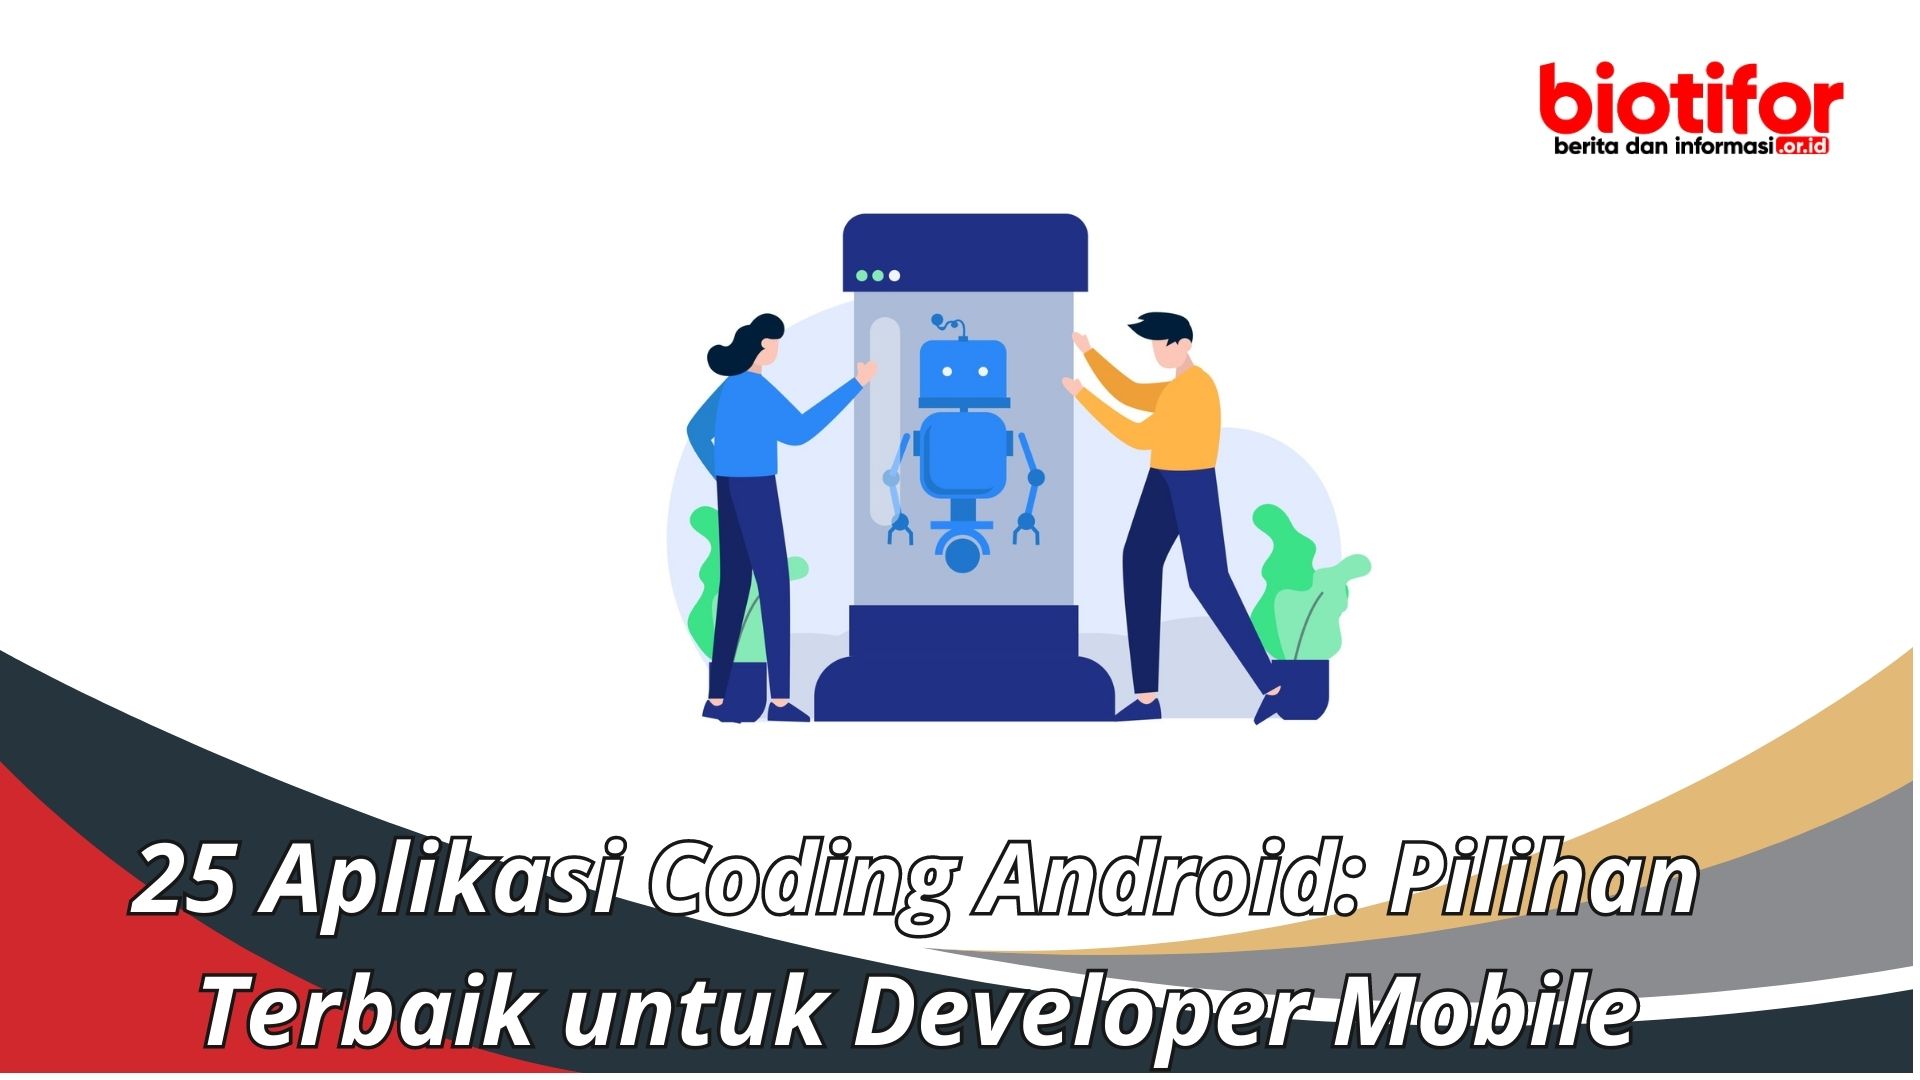 25 Aplikasi Coding Android: Pilihan Terbaik untuk Developer Mobile